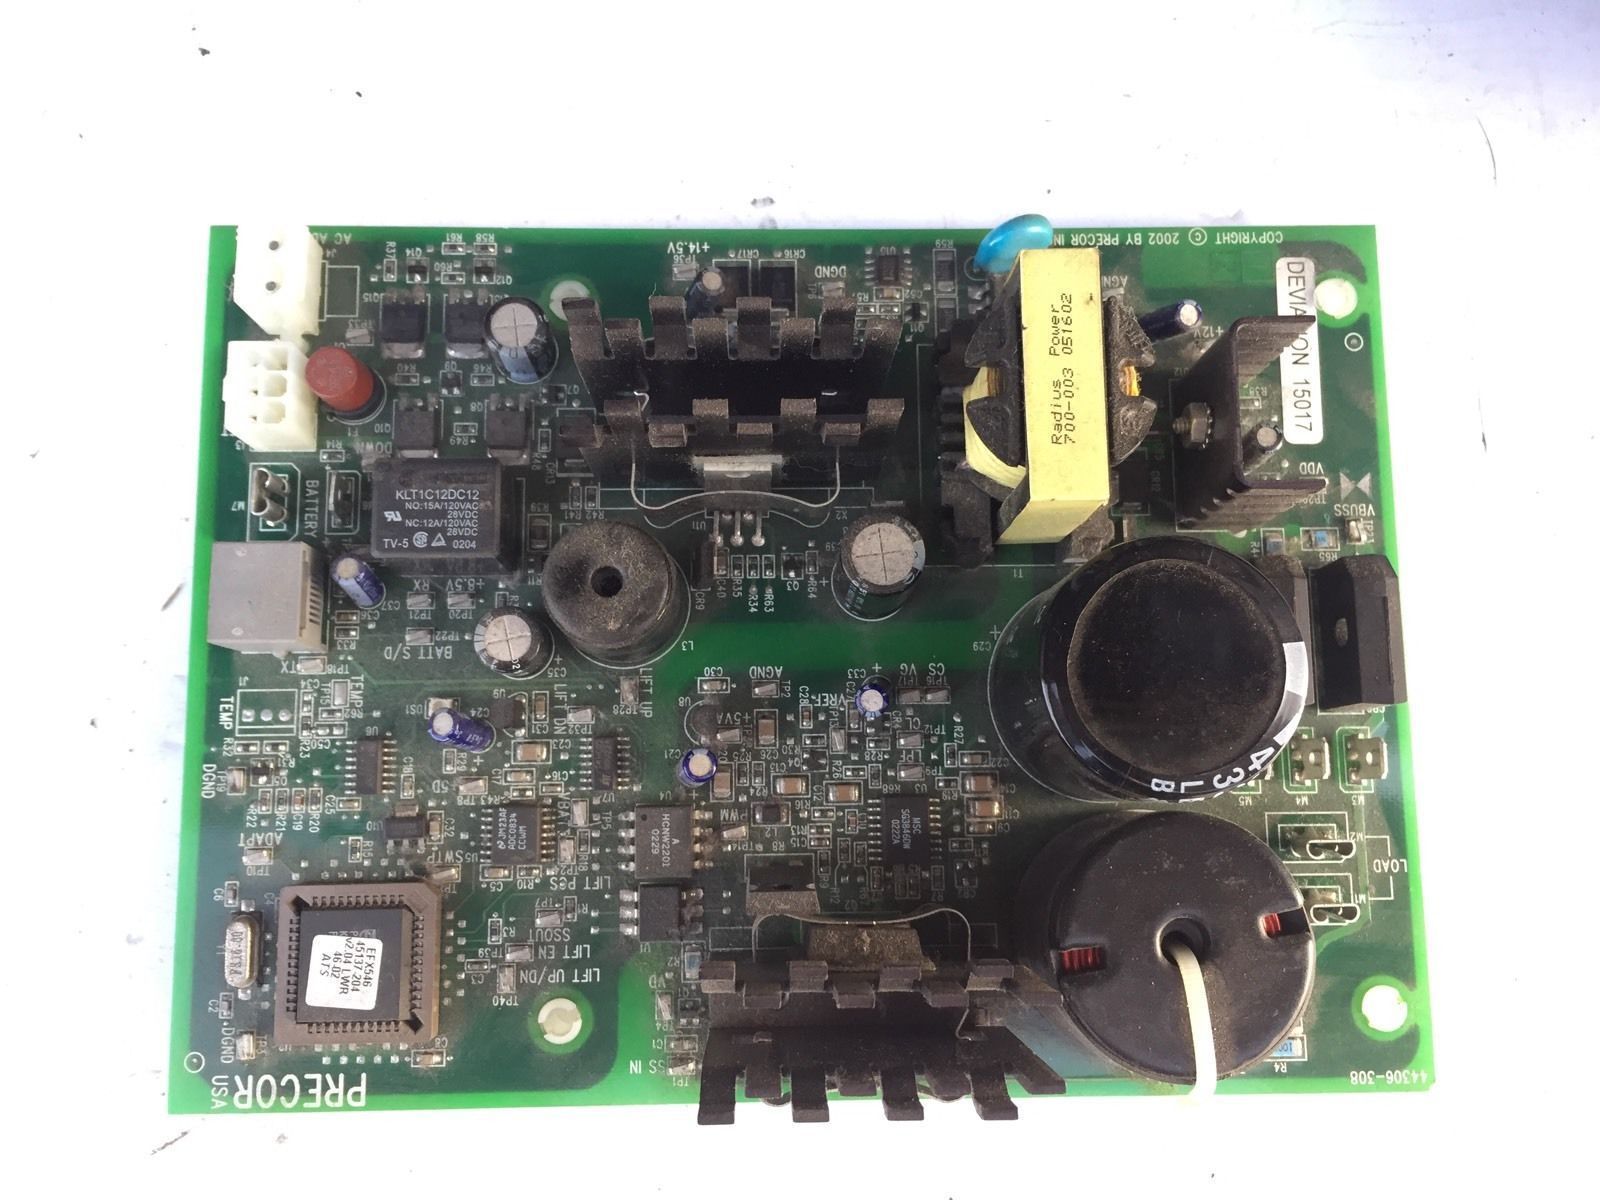 Refurbed Precor EFX 546 524 C524 Elliptical Lower PCA Board Motor Cont ...